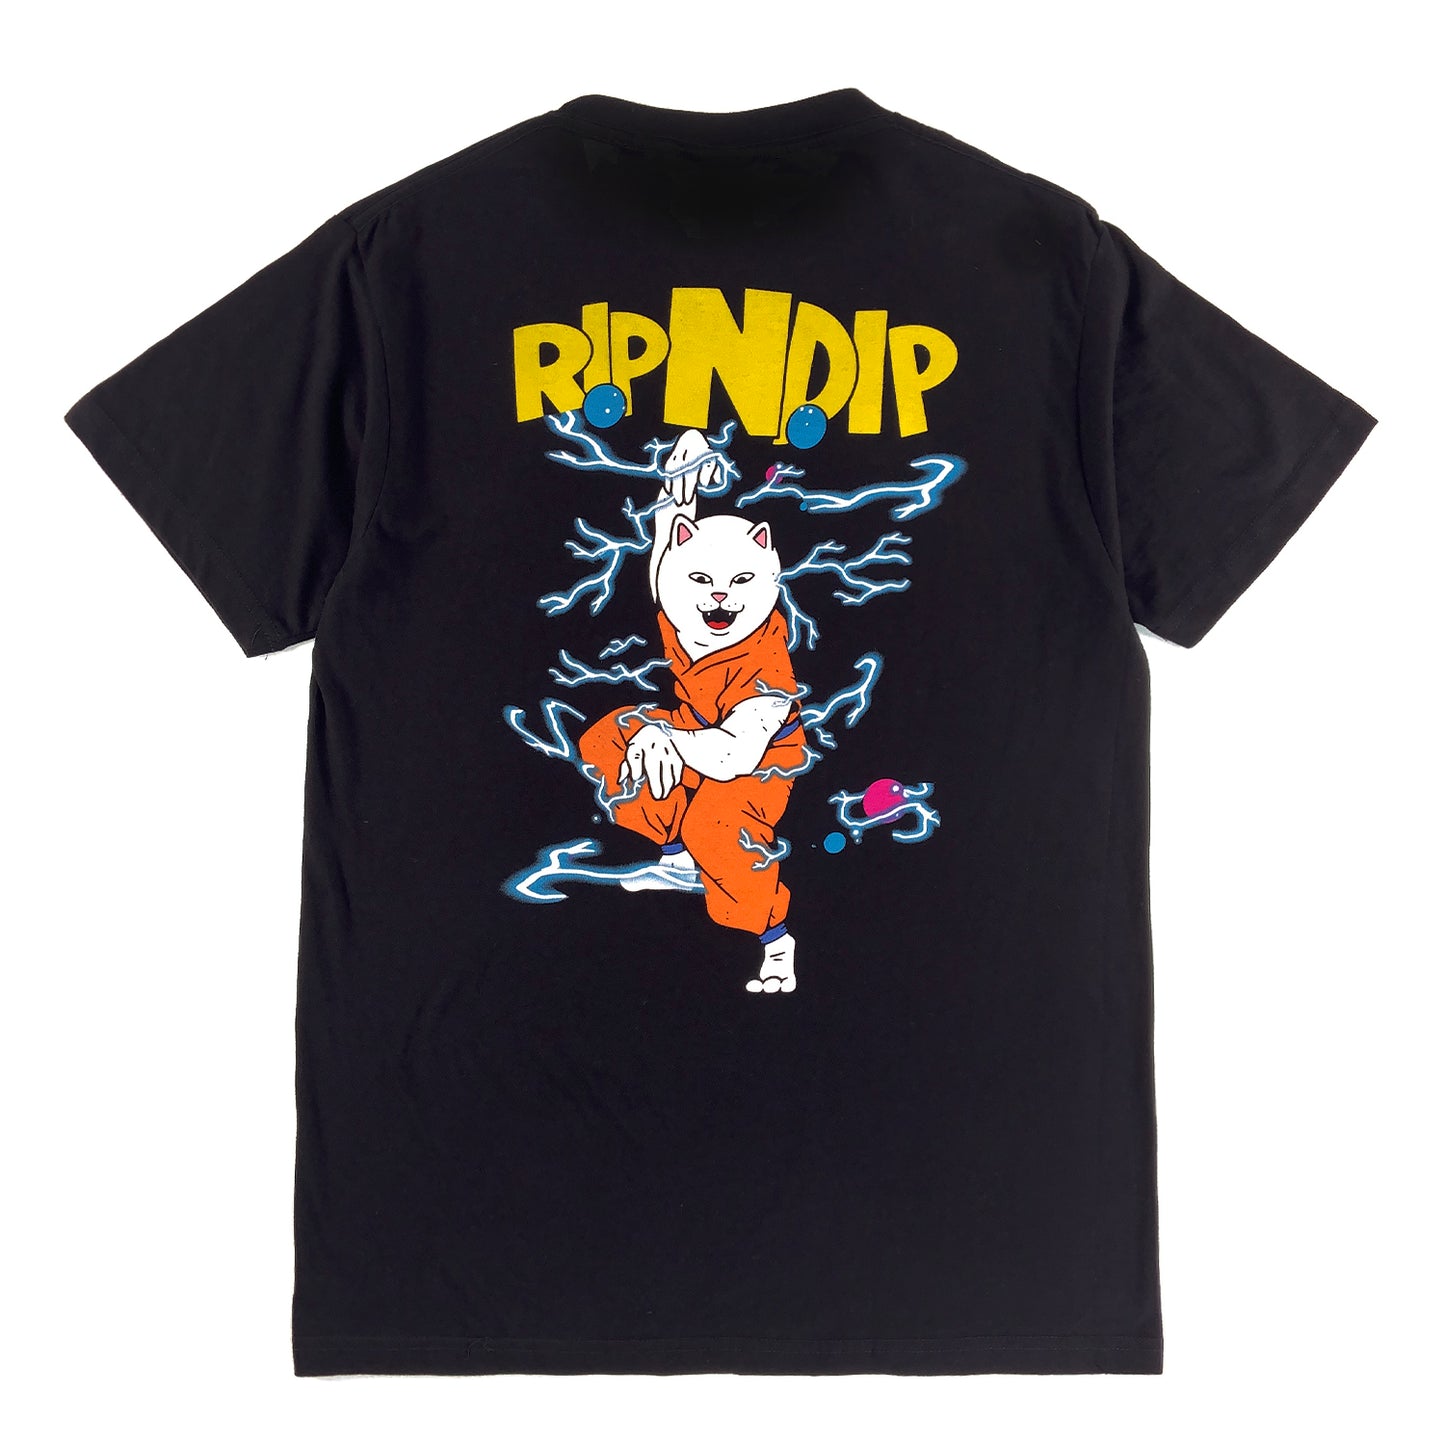 RIPNDIP - Super Sanerm T-shirt - Black - Prime Delux Store